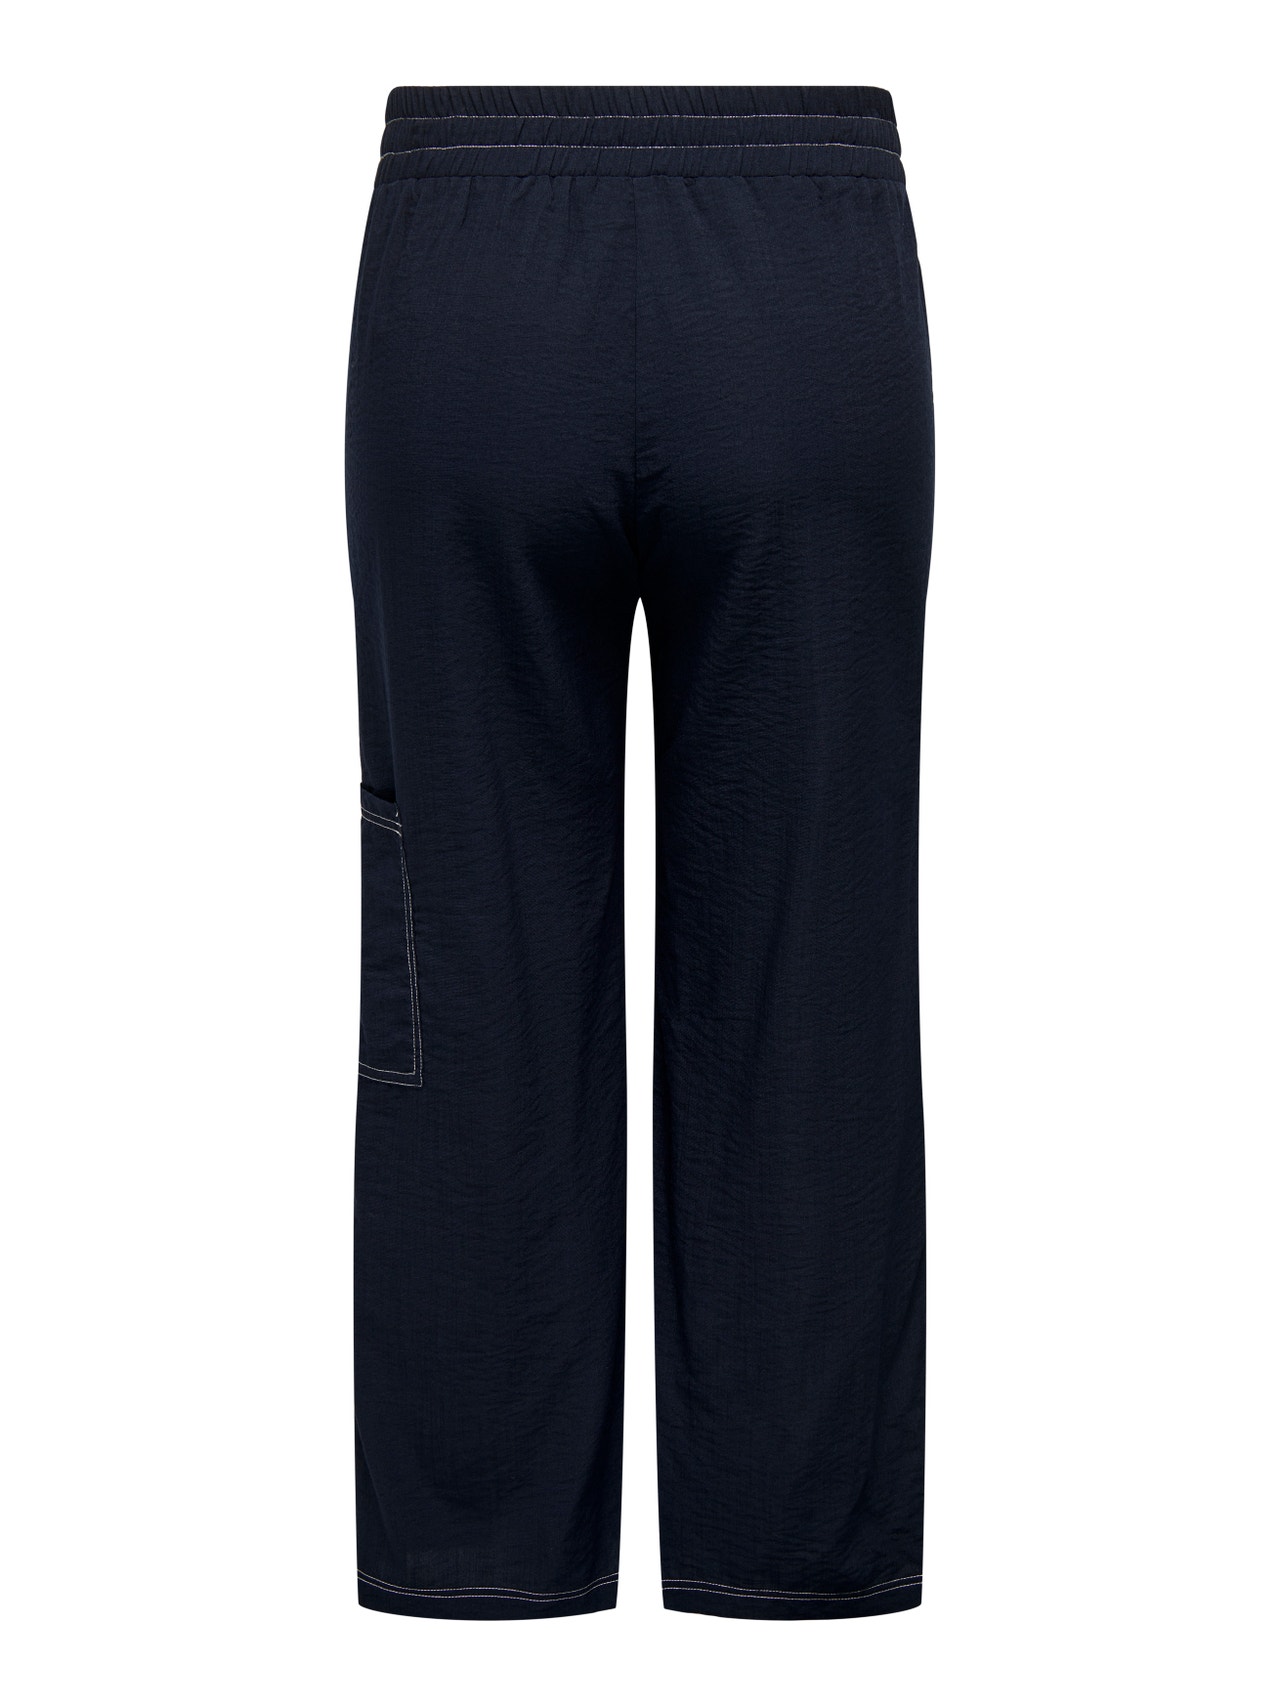 ONLY Curvy cargo pocket pants -Dress Blues - 15303282